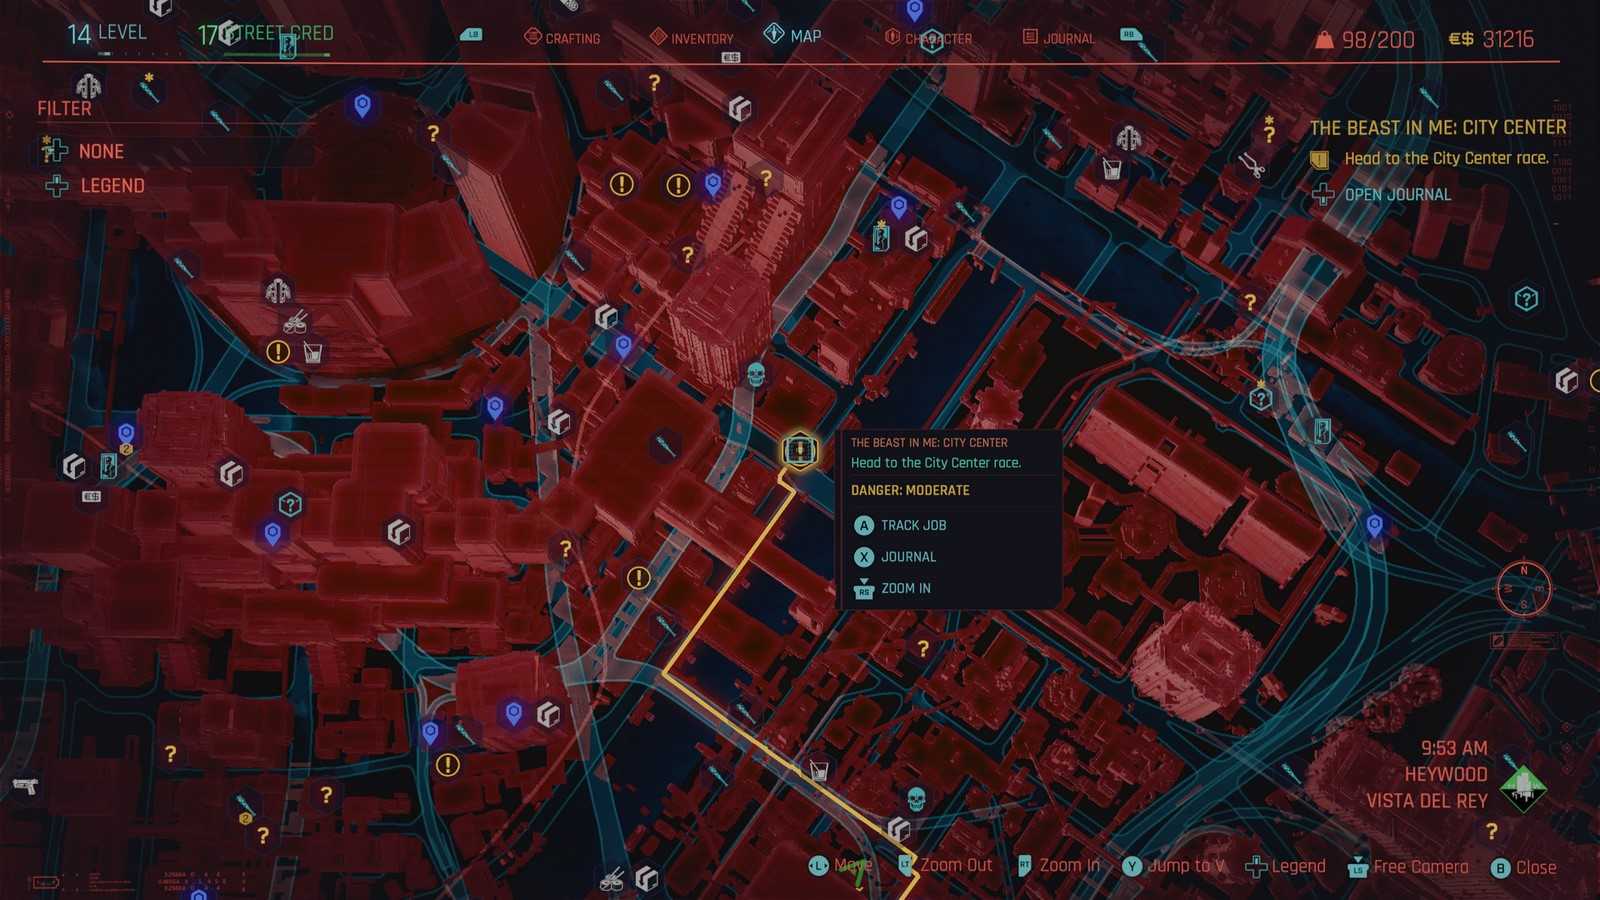 Гайд: Как тюнинговать машину в Cyberpunk 2077 — приключенческая ролевая игра, действие которой происходит в мегаполисе Найт-Сити, где власть, роскошь и модификации тела ценятся выше всего